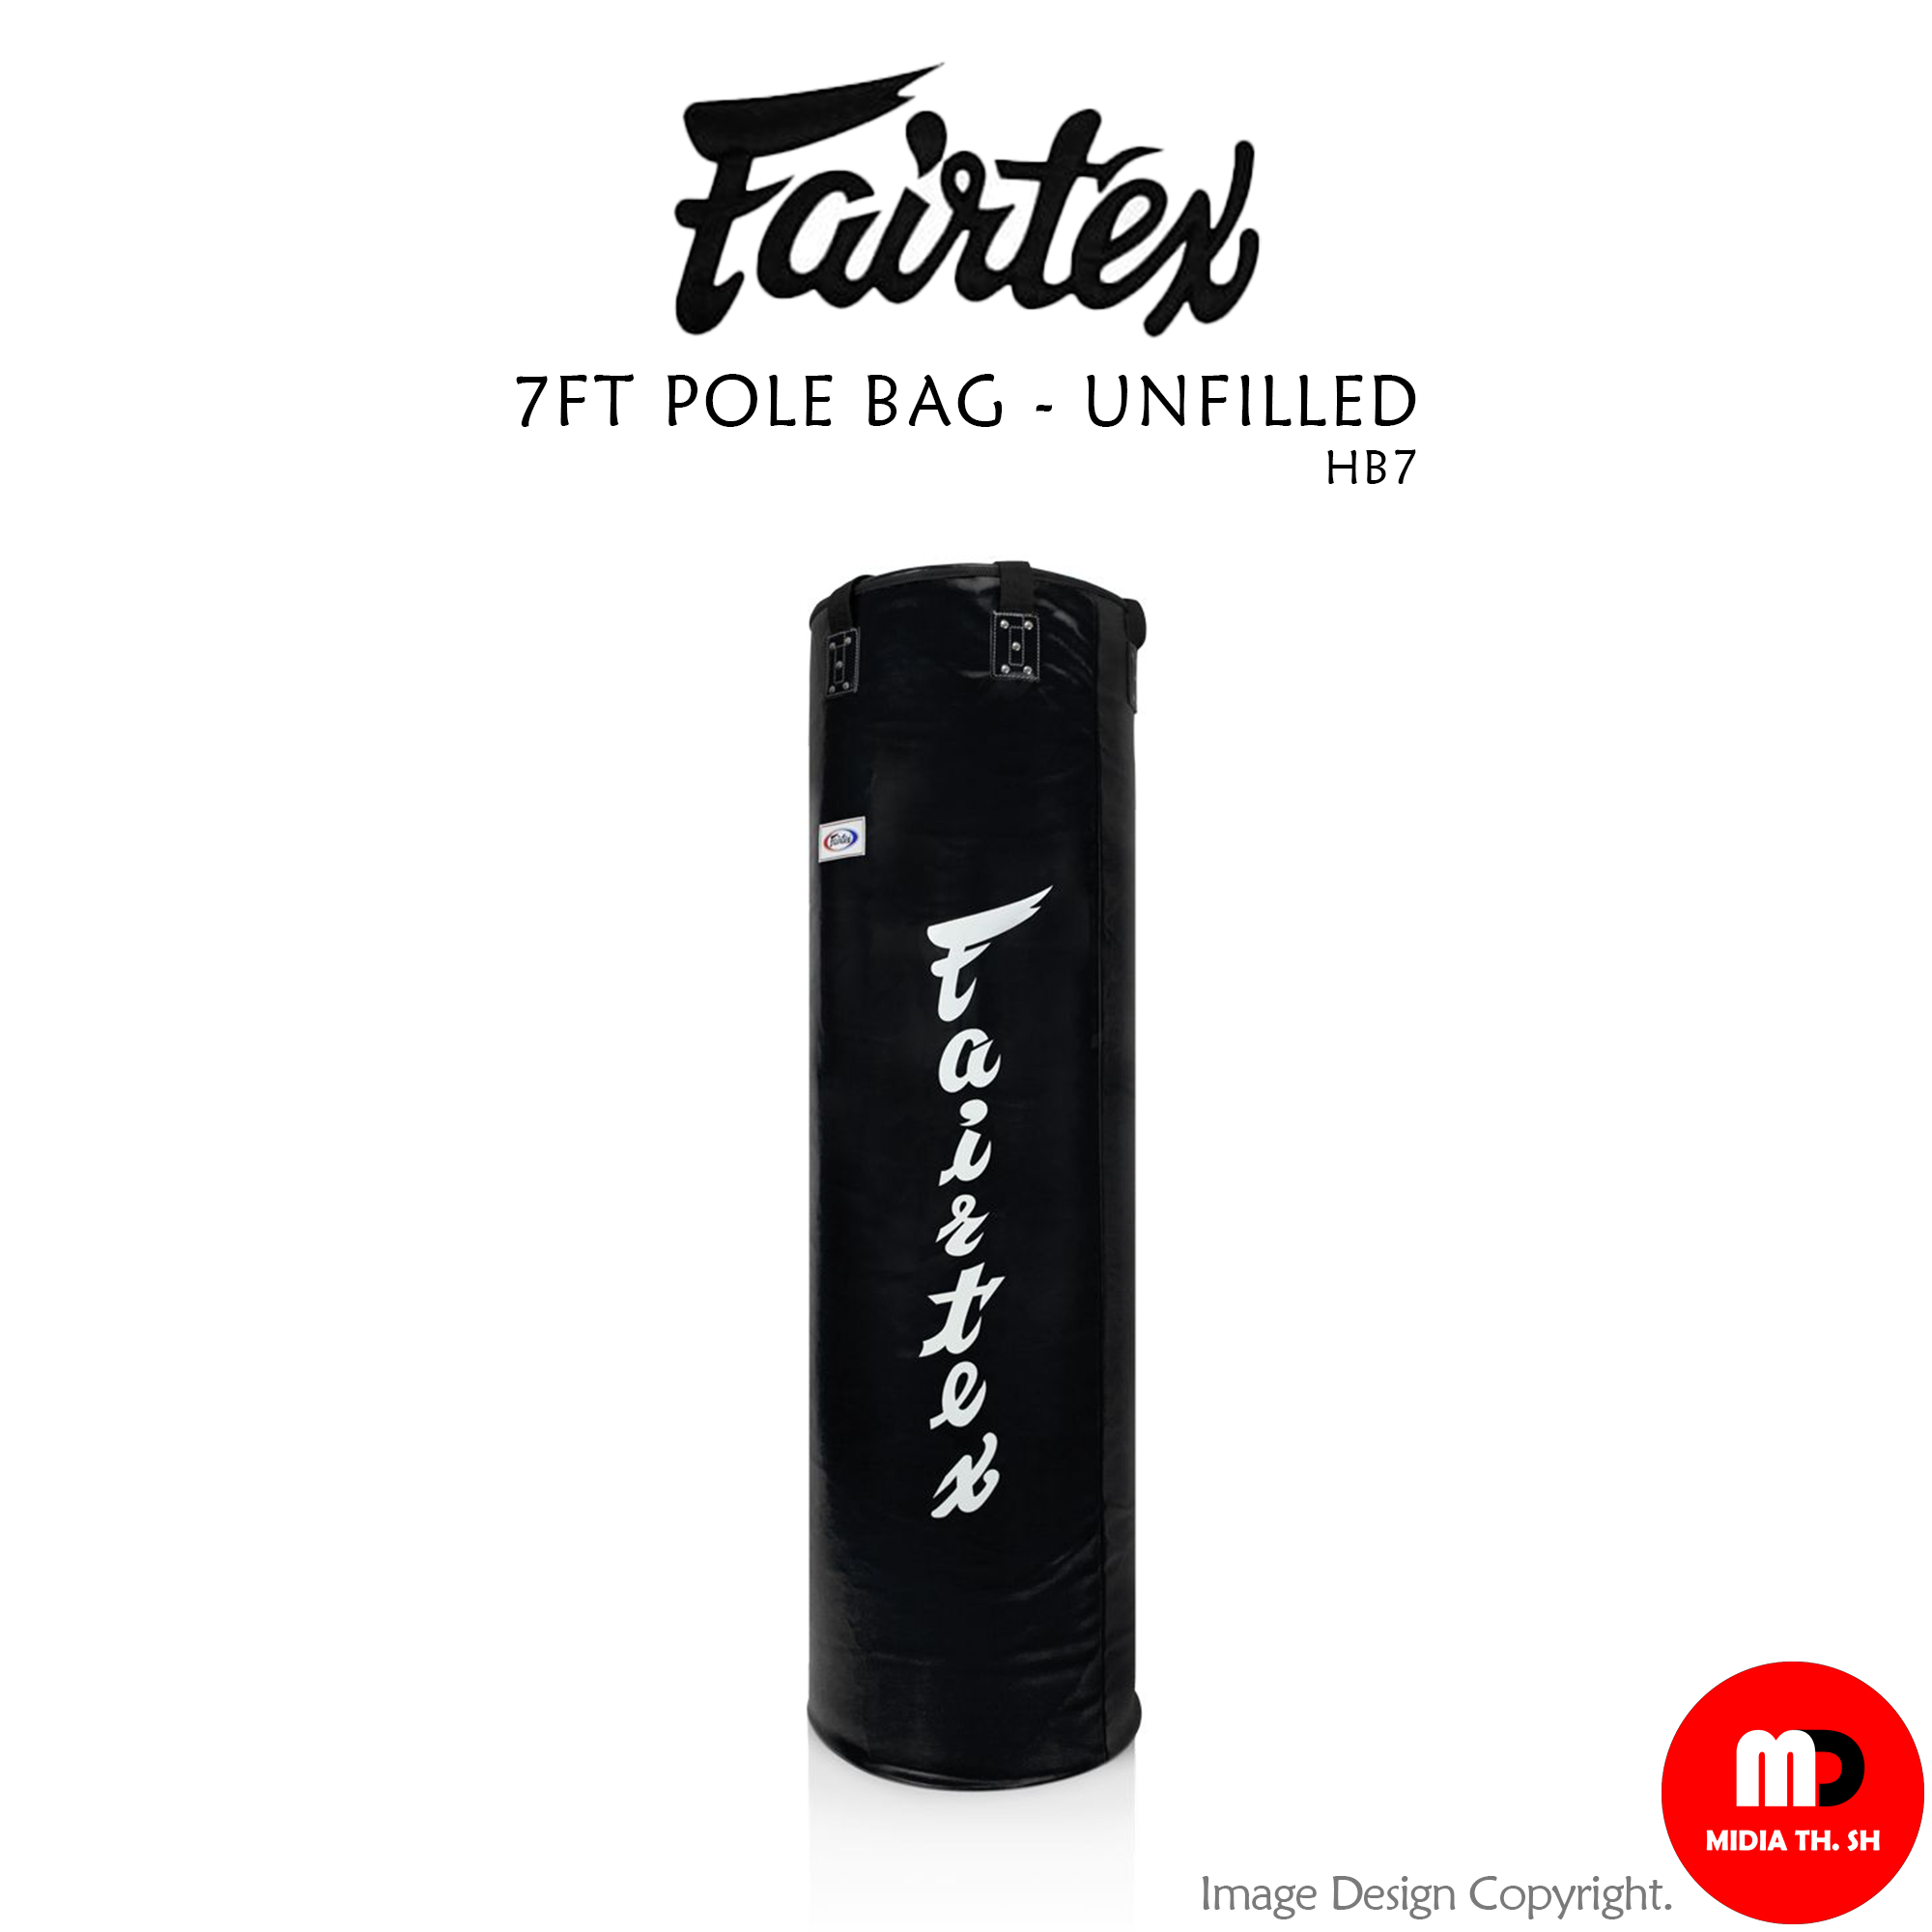 กระสอบทราย Fairtex 7FT POLE BAG - UNFILLED HB7 muay thai for training and  sparring แบบไม่บรรจุ